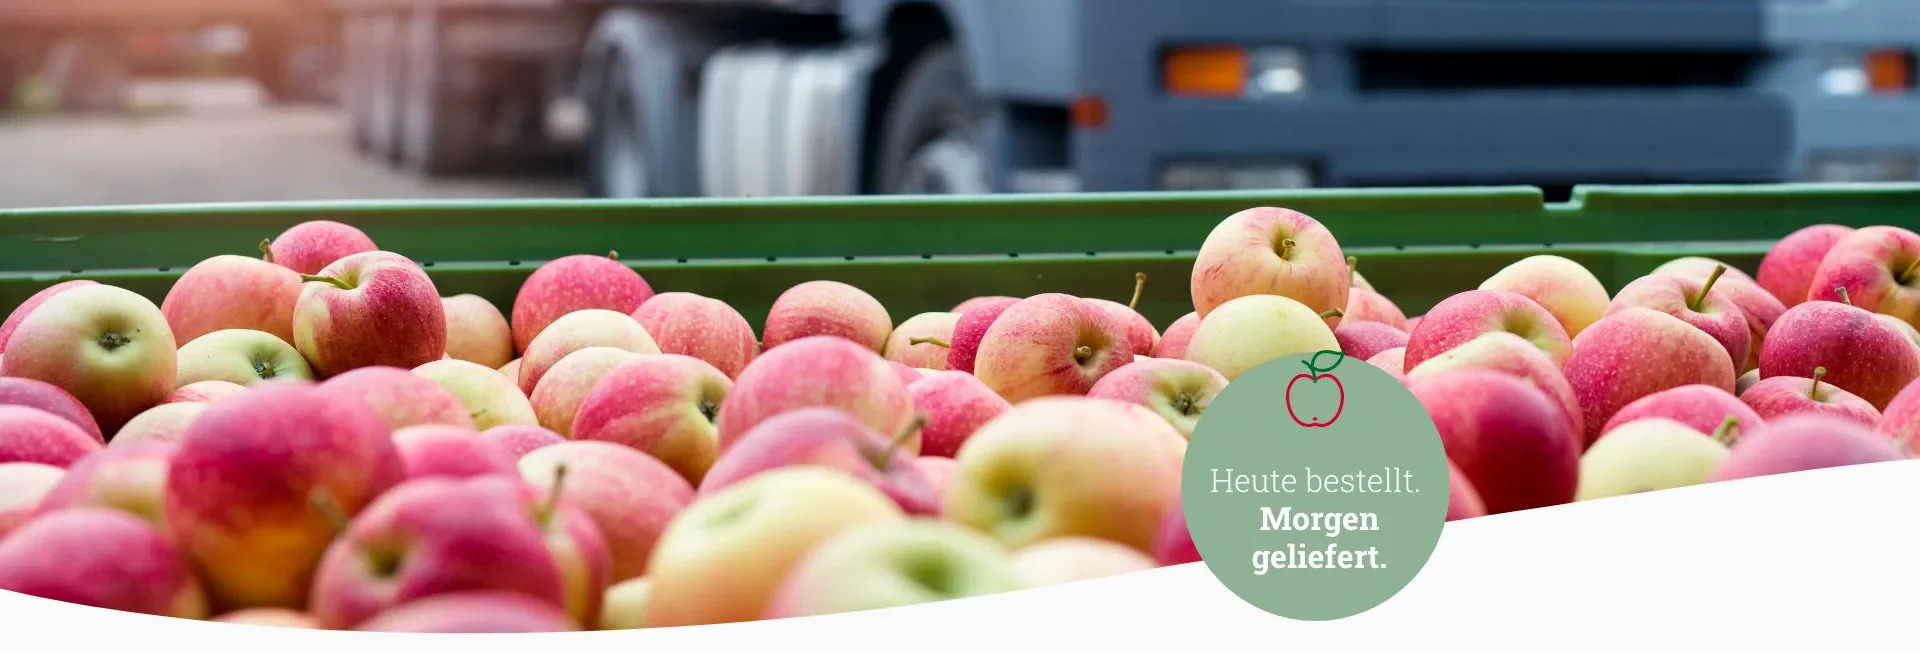 Foodservice Abels Früchte Welt liefert ihnen täglich frisches Obst und Gemüse in Bonn.

Als Spezialist im Großhandel für Obst und Gemüse beliefern wir seit über 60 Jahren - auch überregional den Lebensmittelgroßhandel und Einzelhandel, die Hotellerie, Gastronomie und Gemeinschaftsverpflegung.Wir bieten Ihnen täglich eine große Auswahl an frischem Obst und Gemüse, Exoten, Kräutern, Kartoffeln, Sprossen sowie das vollständige Angebot an küchenfertigem Obst, Gemüse und Salaten aus eigener Produktion. Auch unser Convenience-Angebot entlastet Sie bei Ihrer täglichen Arbeit. Wir bieten Ihnen hochwertige Produkte und überzeugen durch Frische und Qualität.